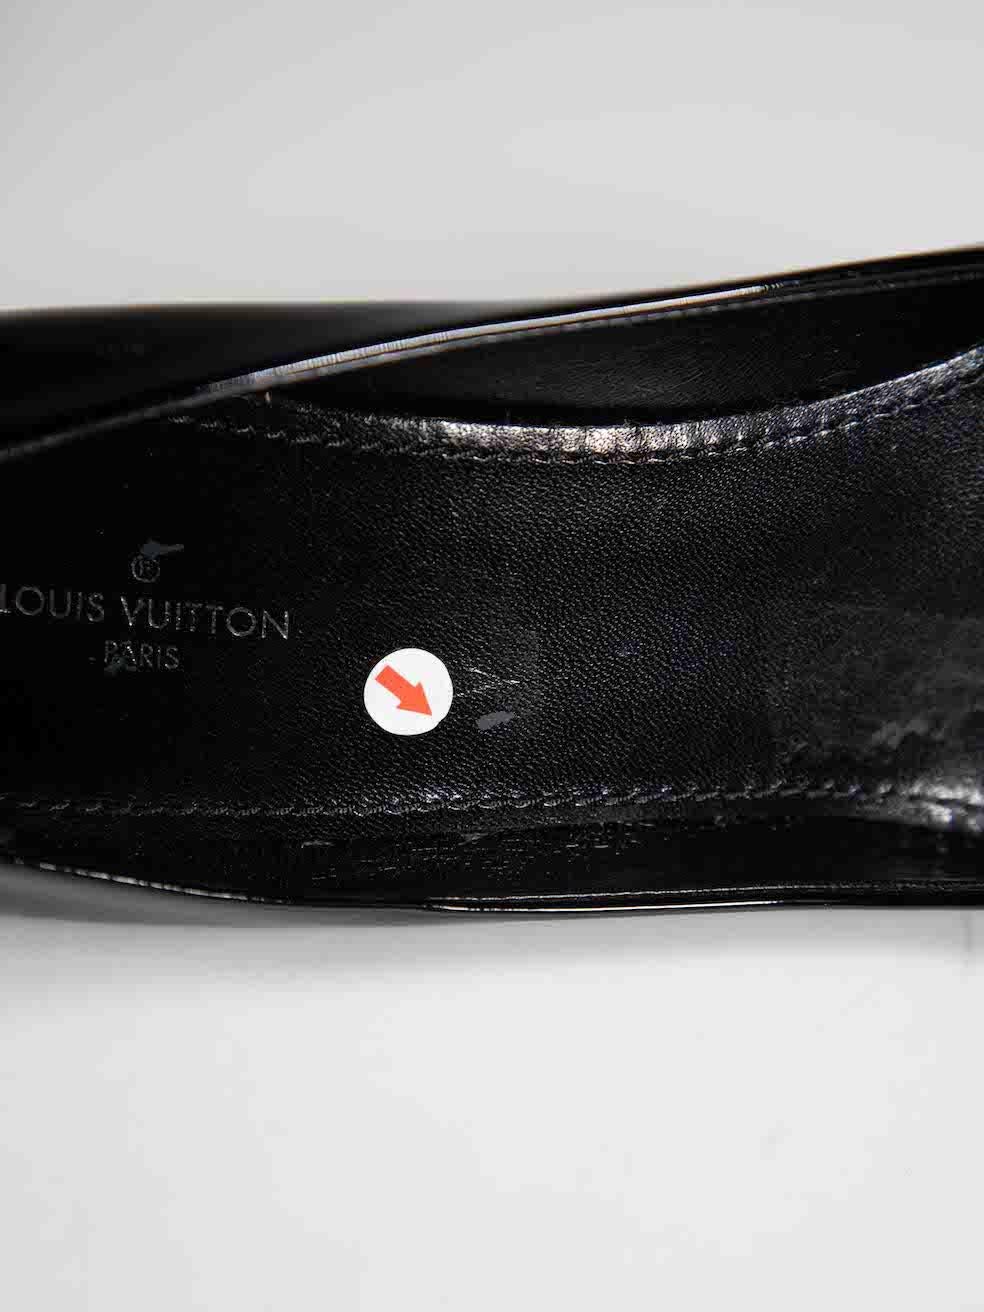 Louis Vuitton Black Patent Leather Fiancee Pumps Size IT 38 1